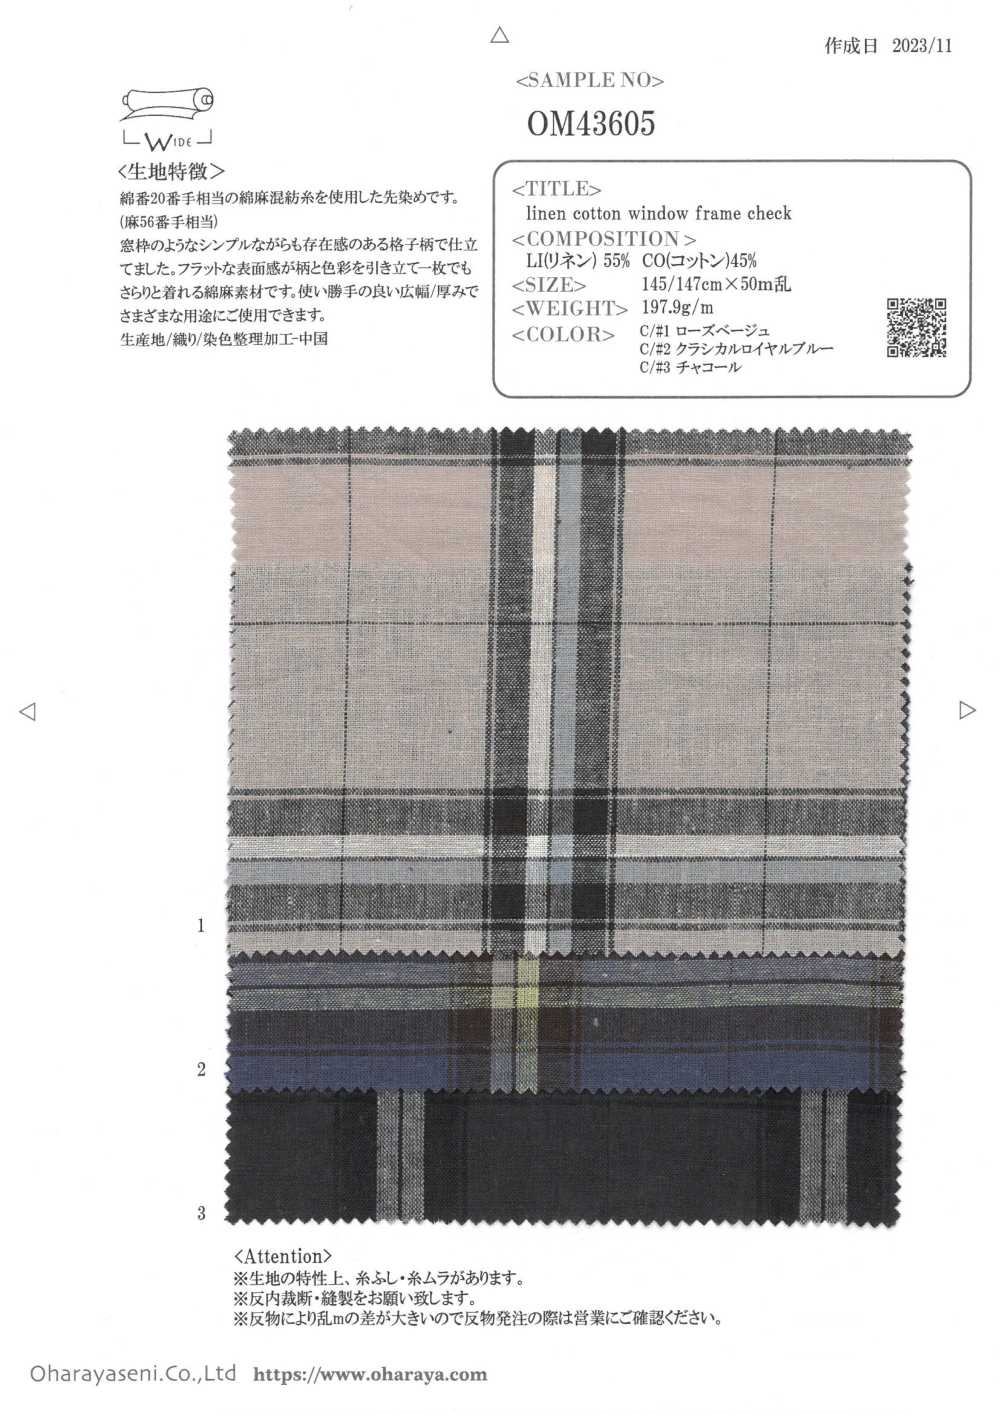 OM43605 Carreaux De Cadre De Fenêtre En Lin Et Coton[Fabrication De Textile] Oharayaseni